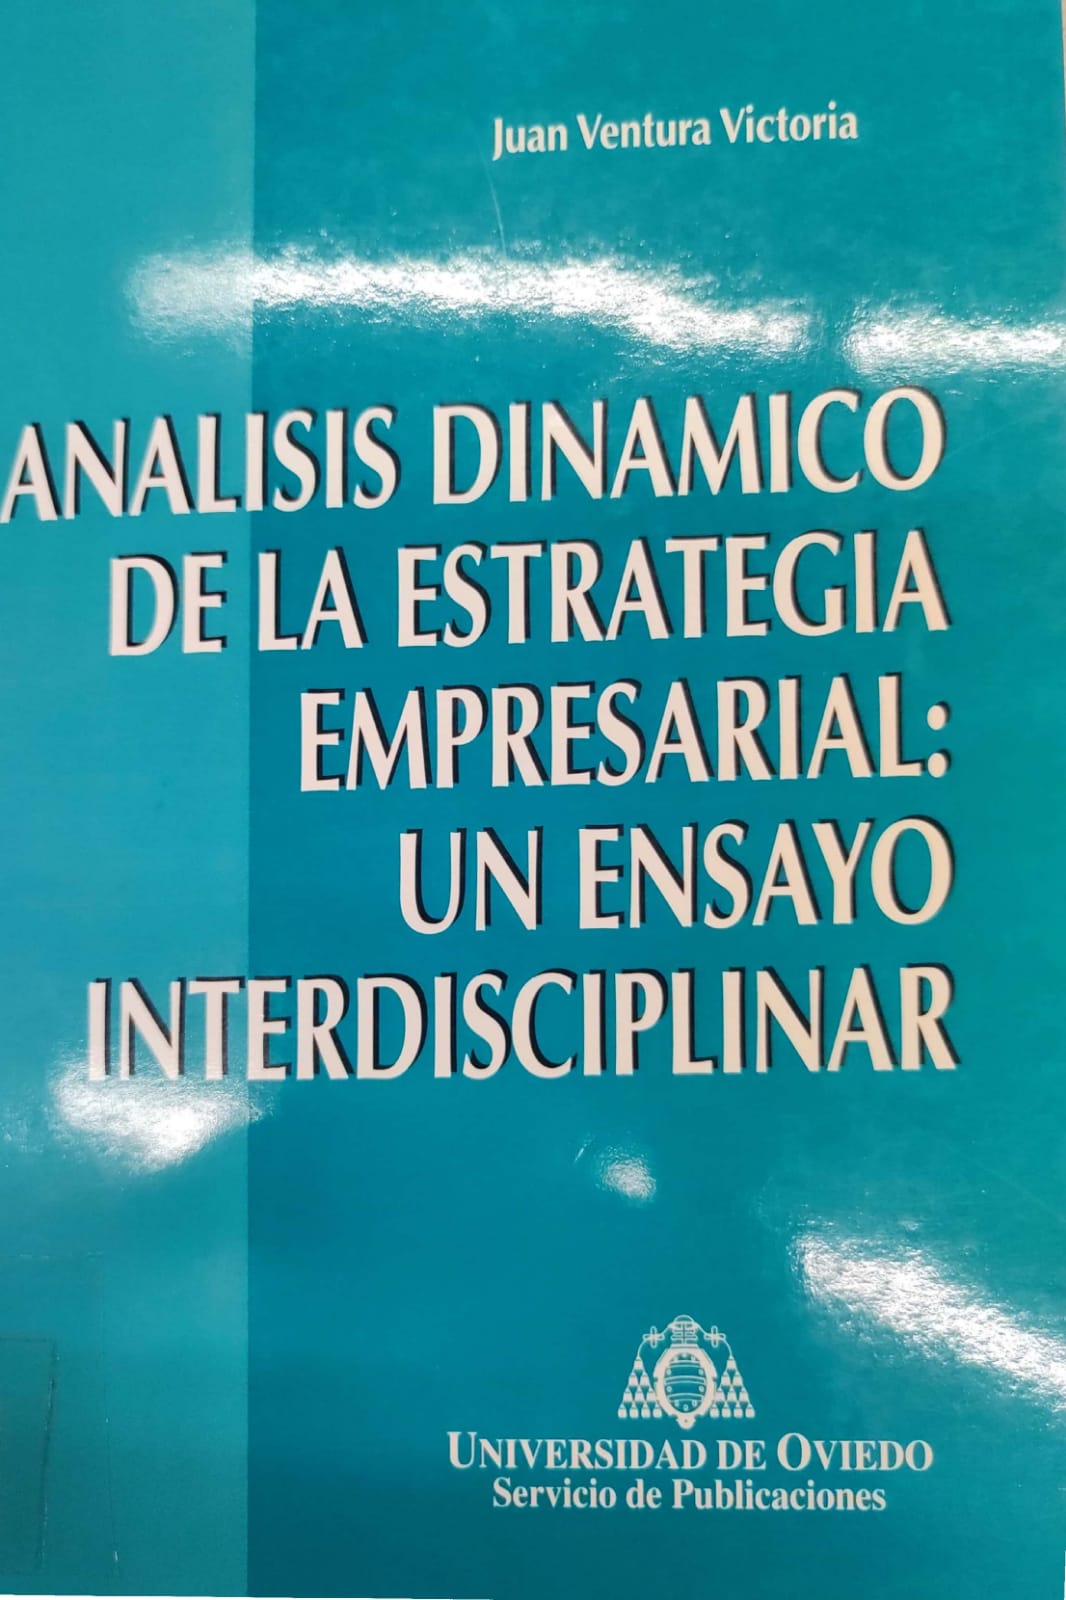 Imagen de portada del libro Análisis dinámico de la estrategia empresarial